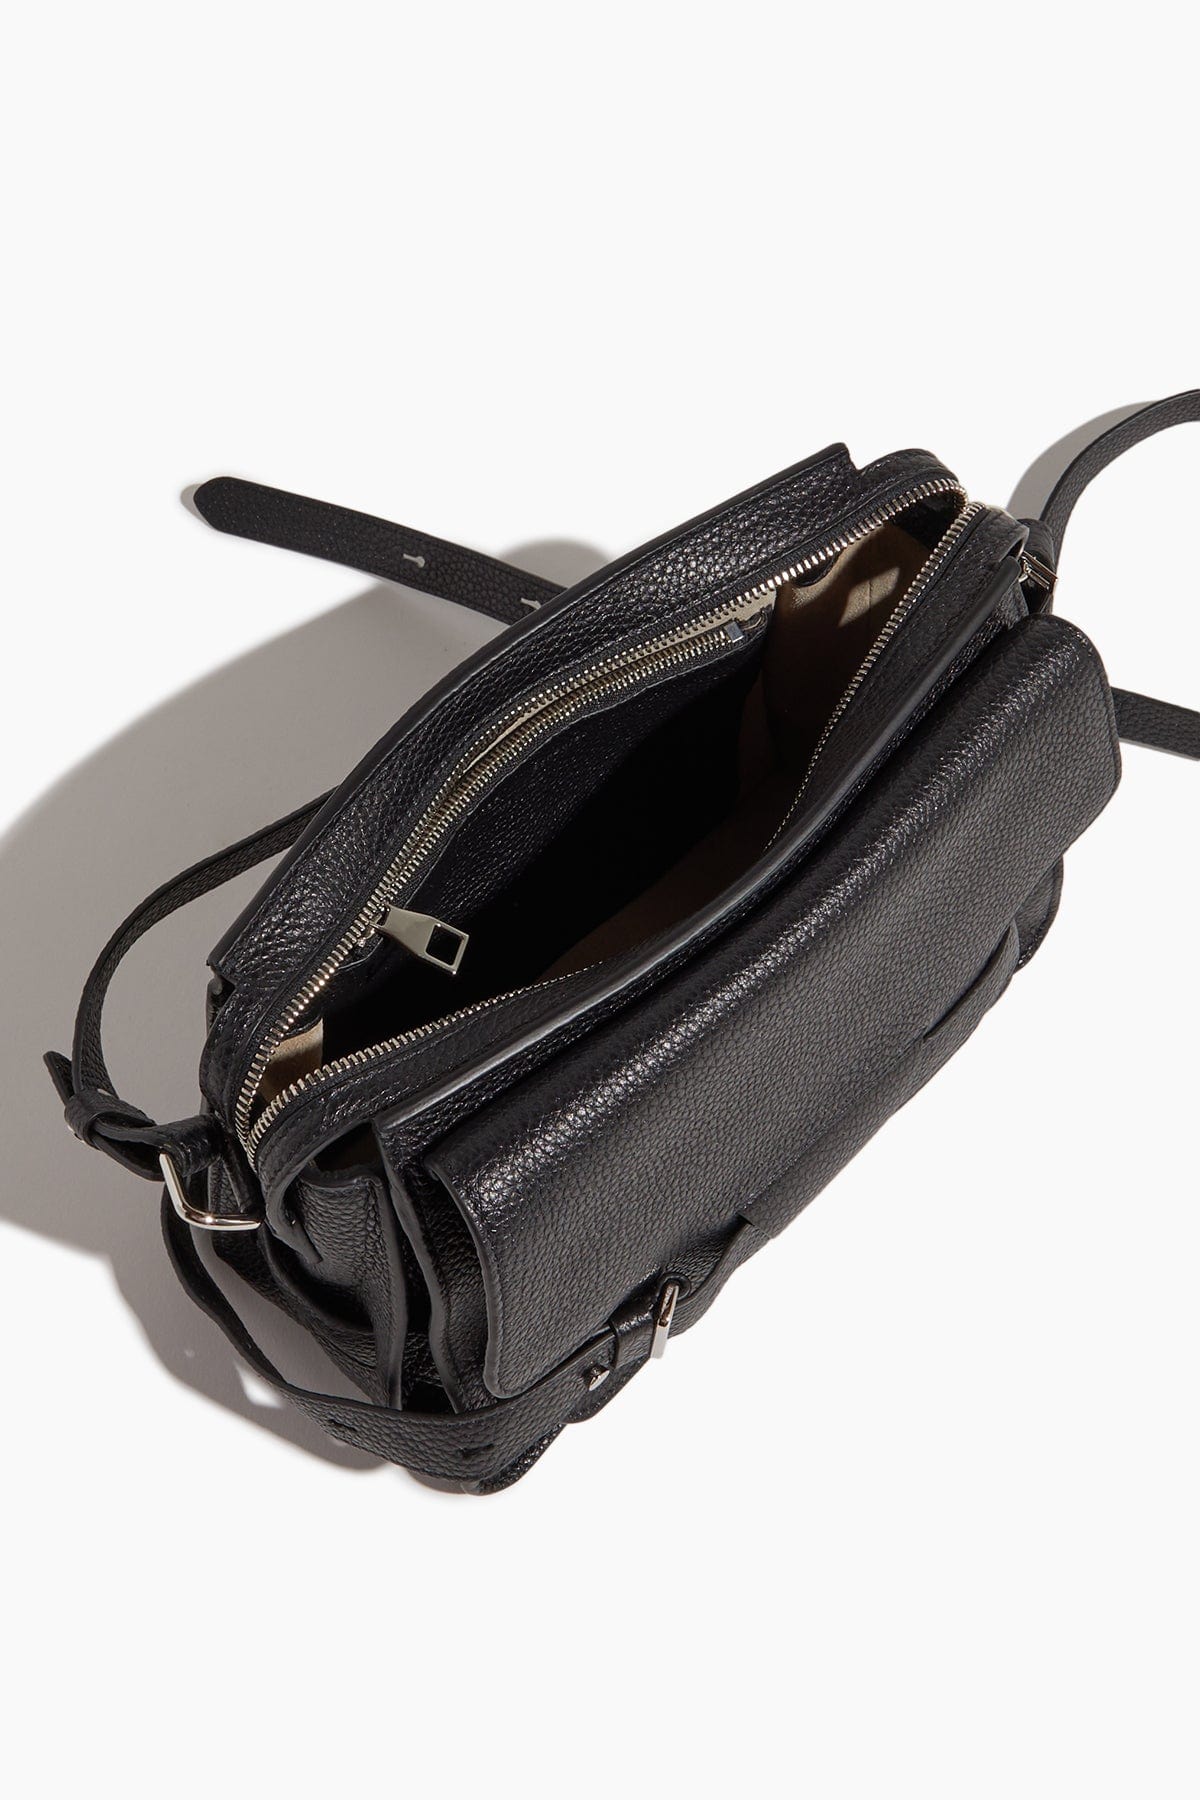 Proenza Schouler Handbags Cross Body Bags Beacon Saddle Bag in Black Proenza Schouler Beacon Saddle Bag in Black